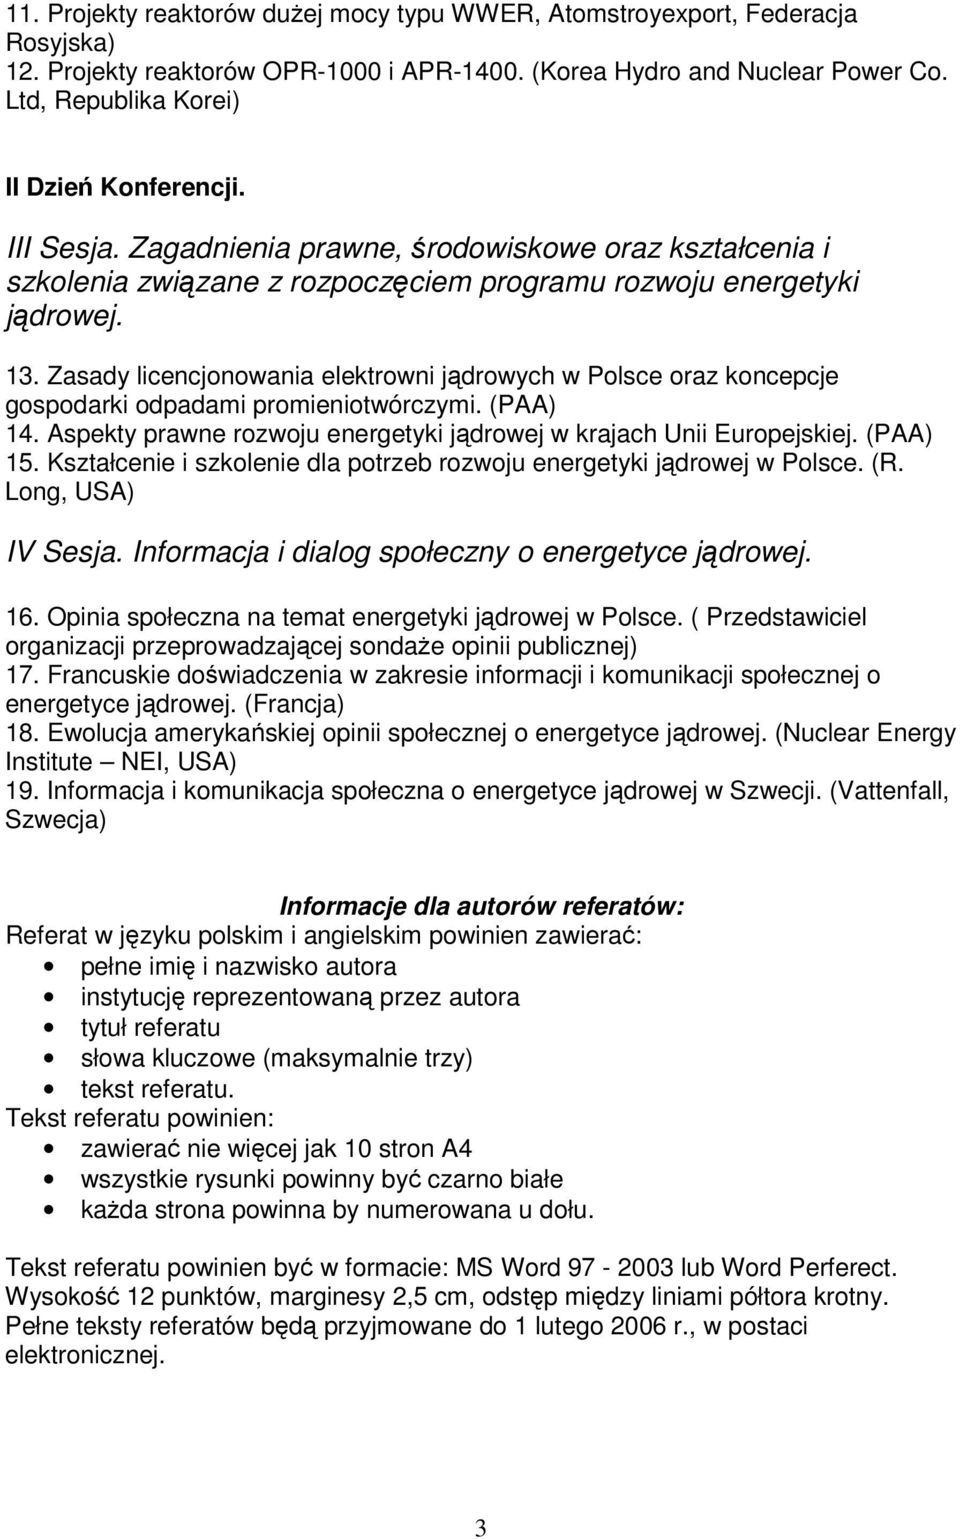 Zasady licencjonowania elektrowni jdrowych w Polsce oraz koncepcje gospodarki odpadami promieniotwórczymi. (PAA) 14. Aspekty prawne rozwoju energetyki jdrowej w krajach Unii Europejskiej. (PAA) 15.